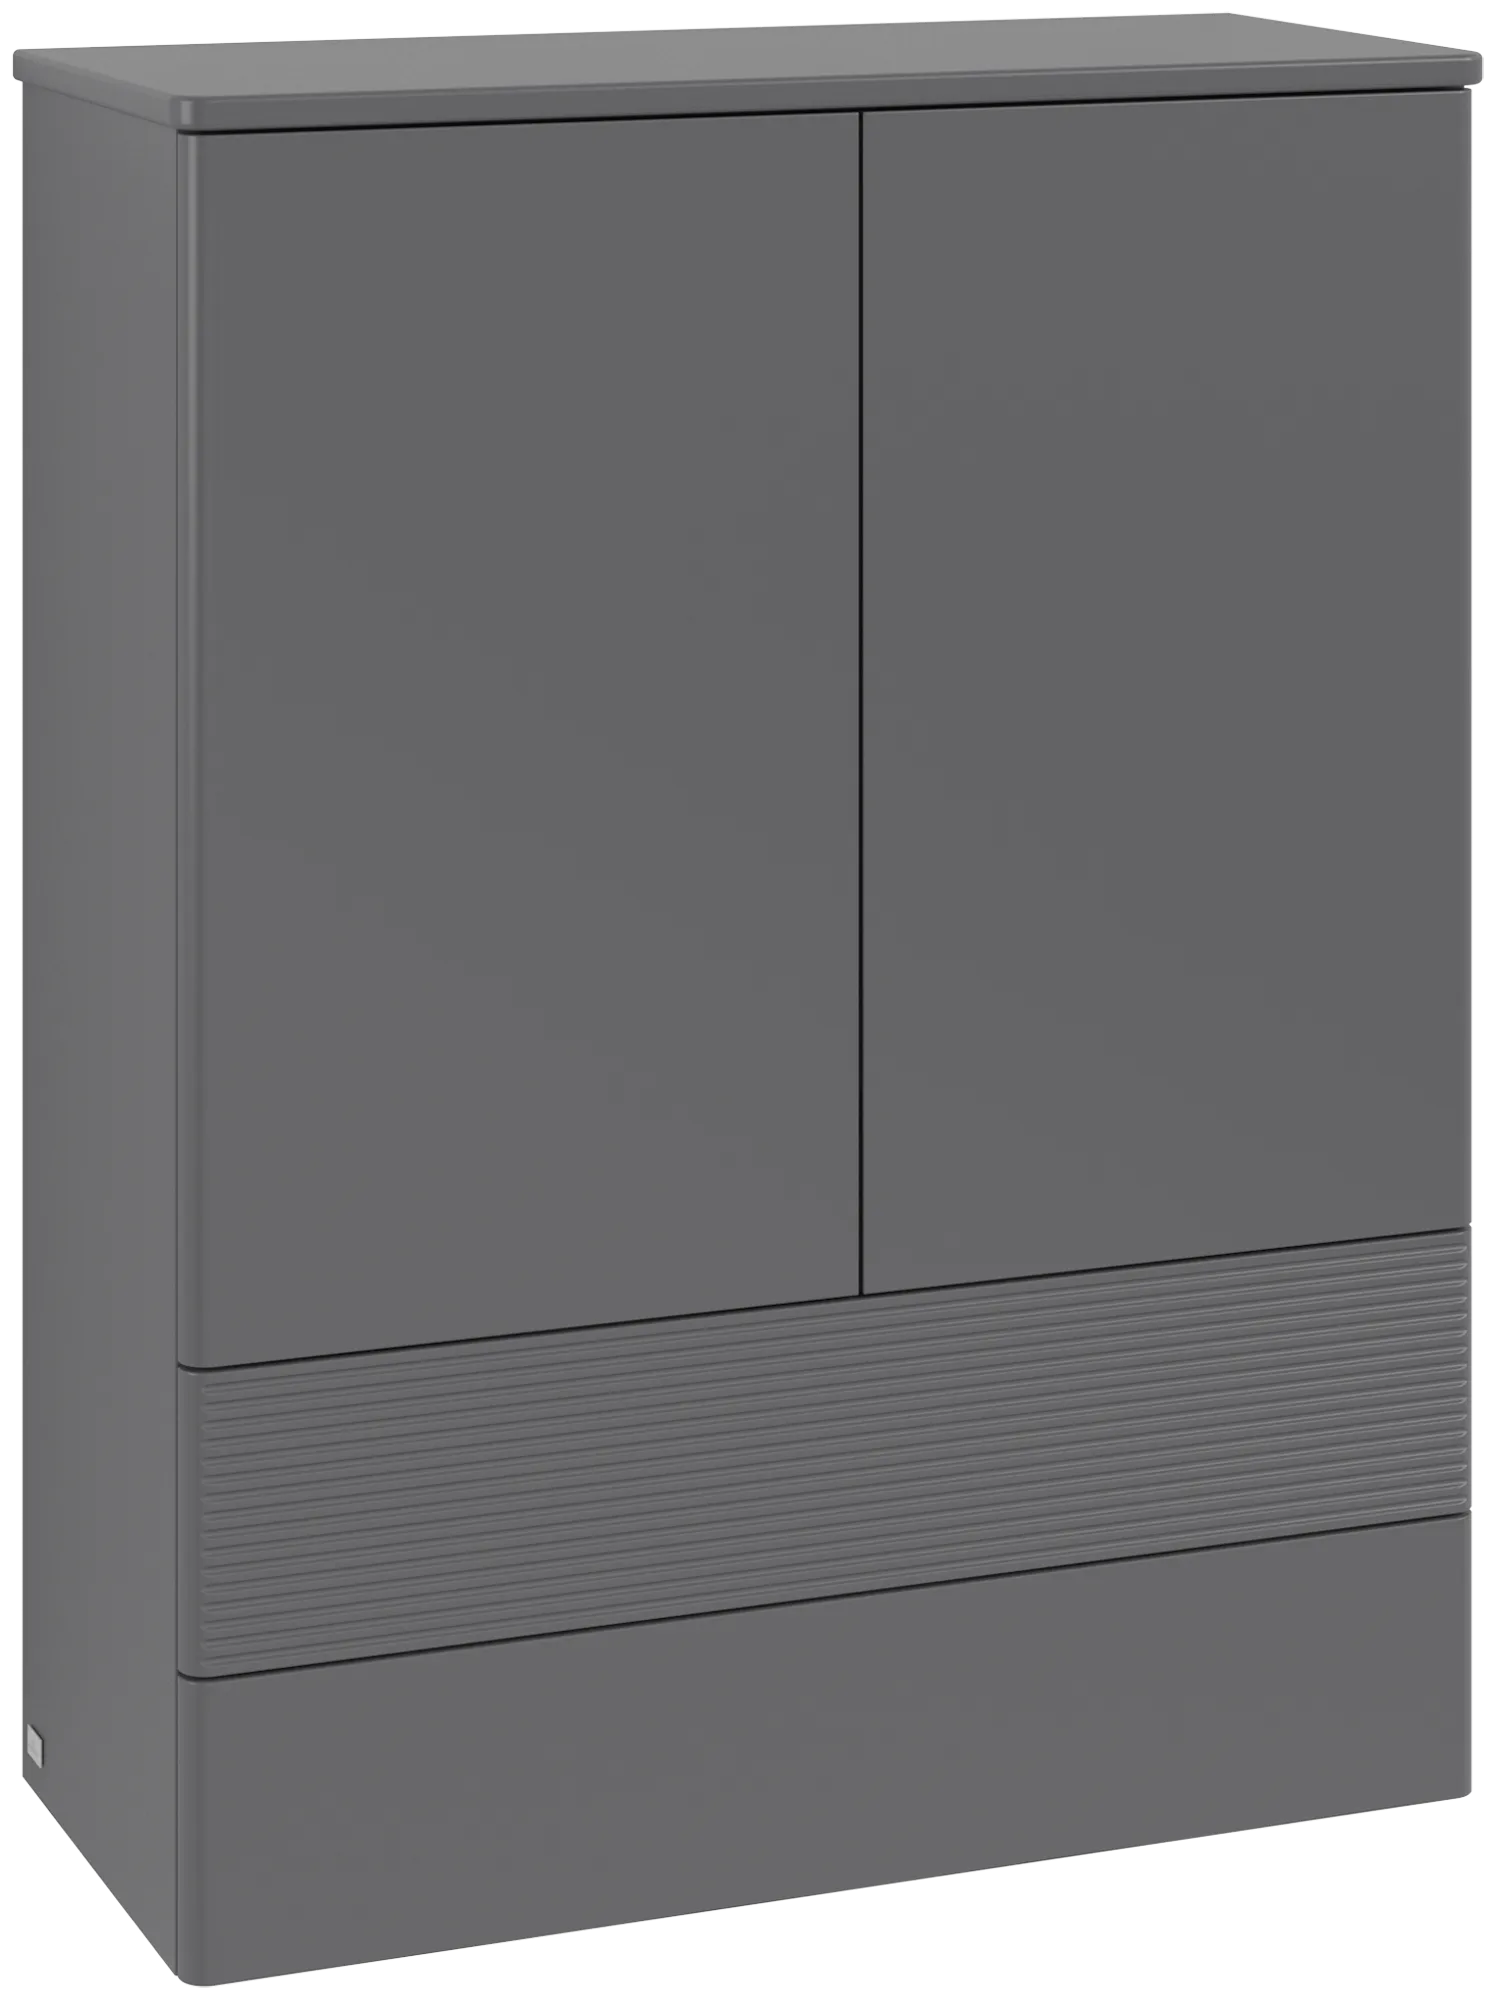 Bild von VILLEROY BOCH Antao Highboard, 2 Türen, 814 x 1039 x 356 mm, Front mit Struktur, Anthracite Matt Lacquer / Anthracite Matt Lacquer #K47100GK